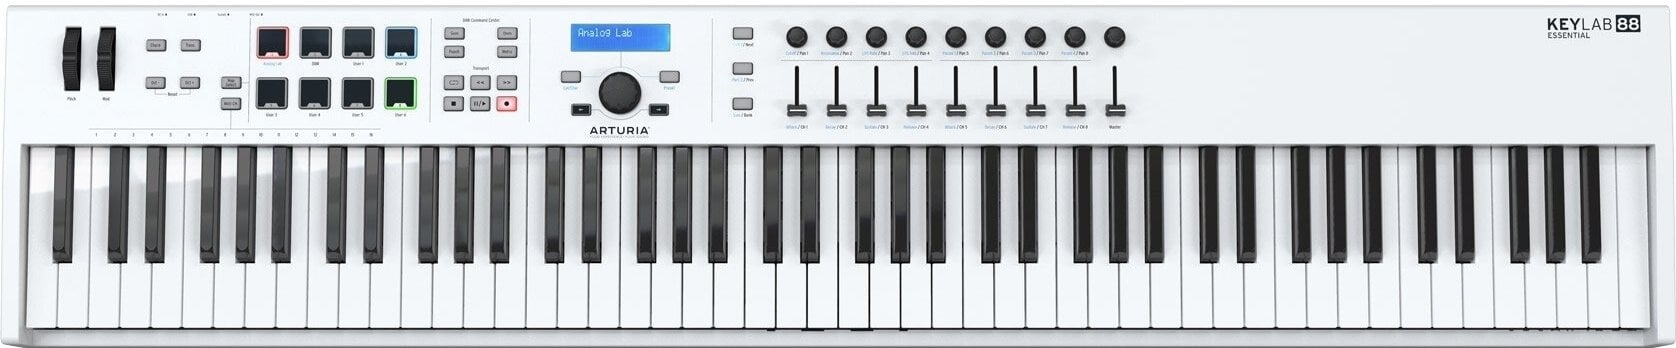 MIDI keyboard Arturia KeyLab Essential 88